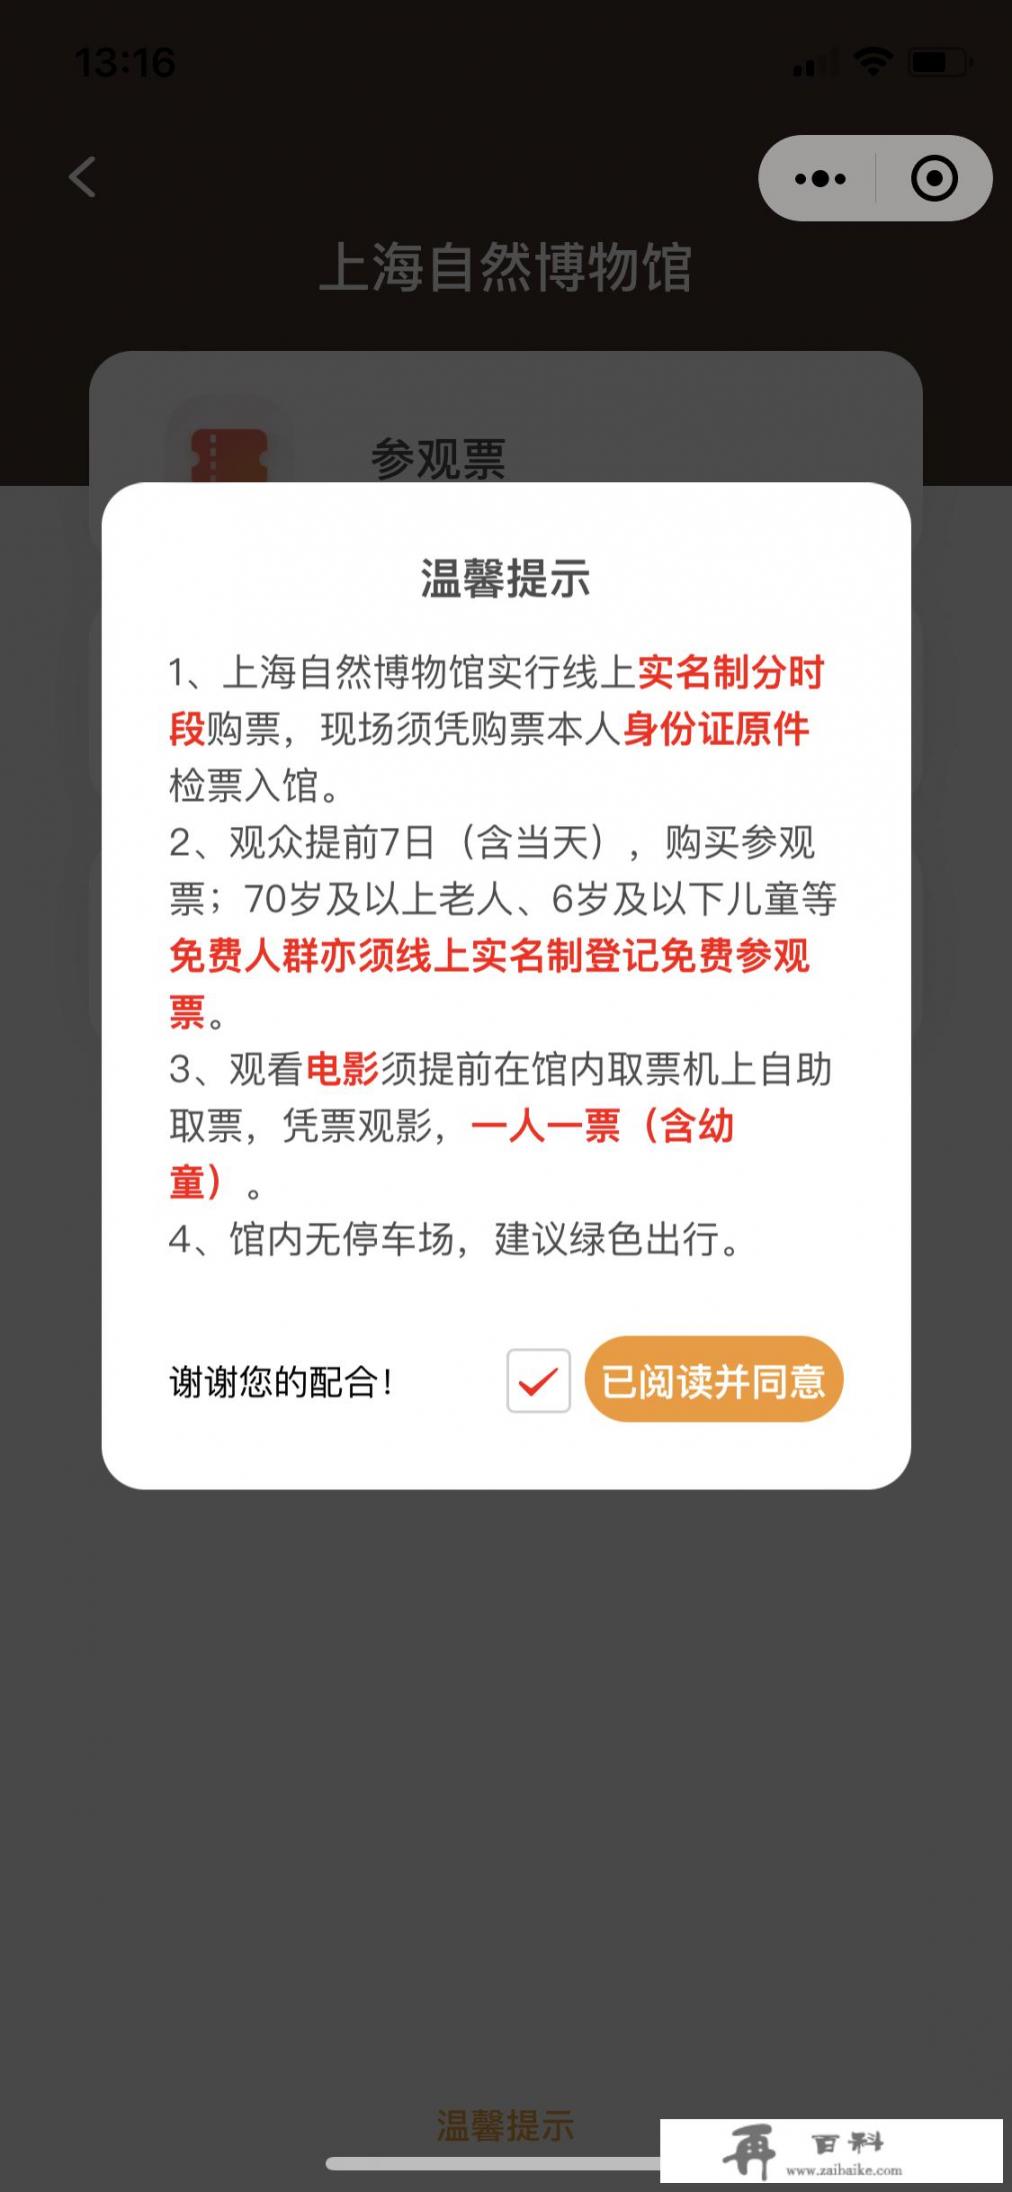 上海自然博物馆门票预约官网？上海科技馆和自然博物馆怎么预约？